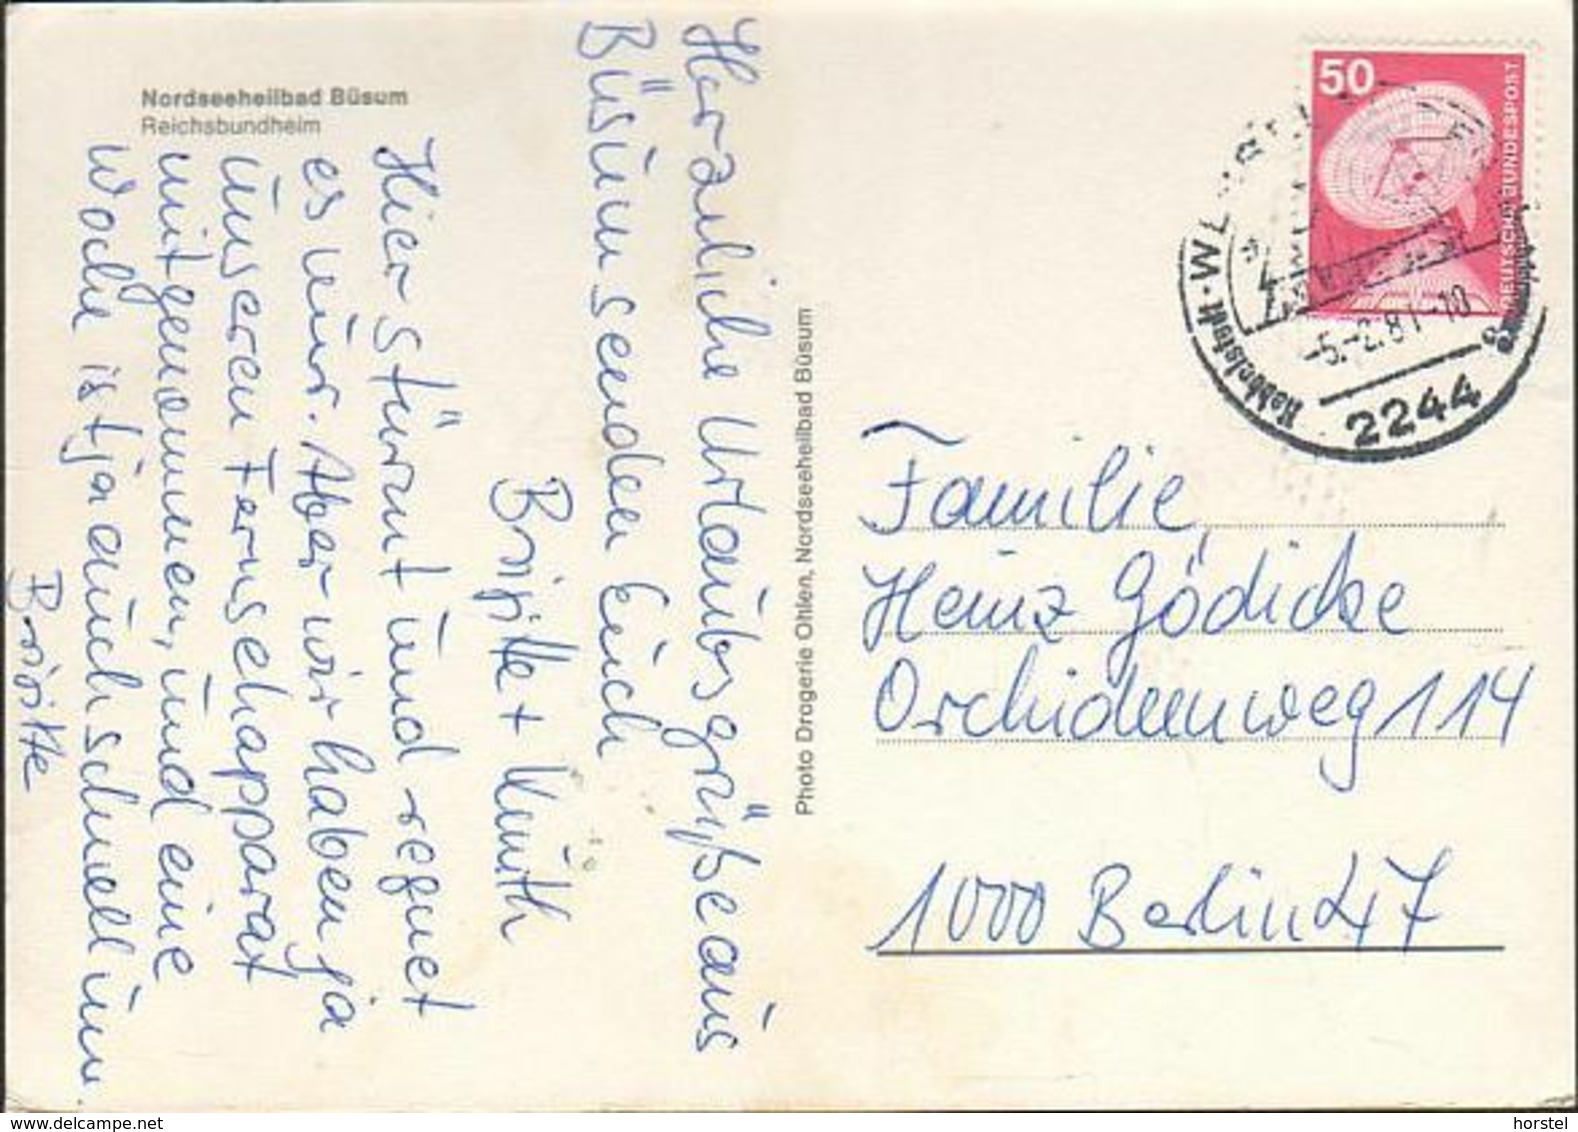 D-25761 Büsum - Nordseeheilbad - Reichsbundheim - Schwimmbad - Nice Stamp - Büsum